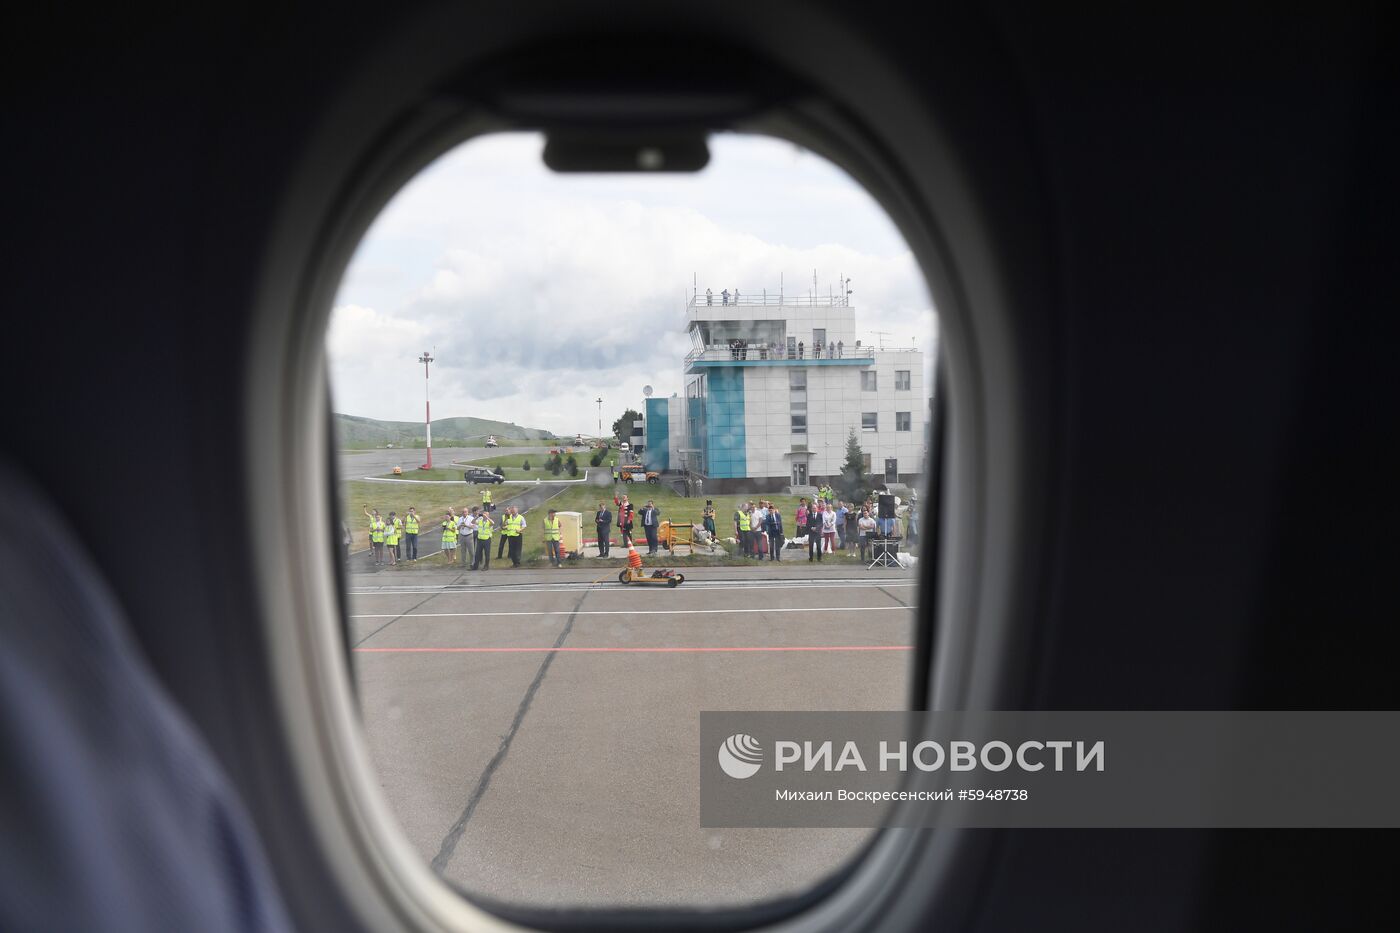 Первый рейс авиакомпании «Победа» из Москвы в Горно-Алтайск